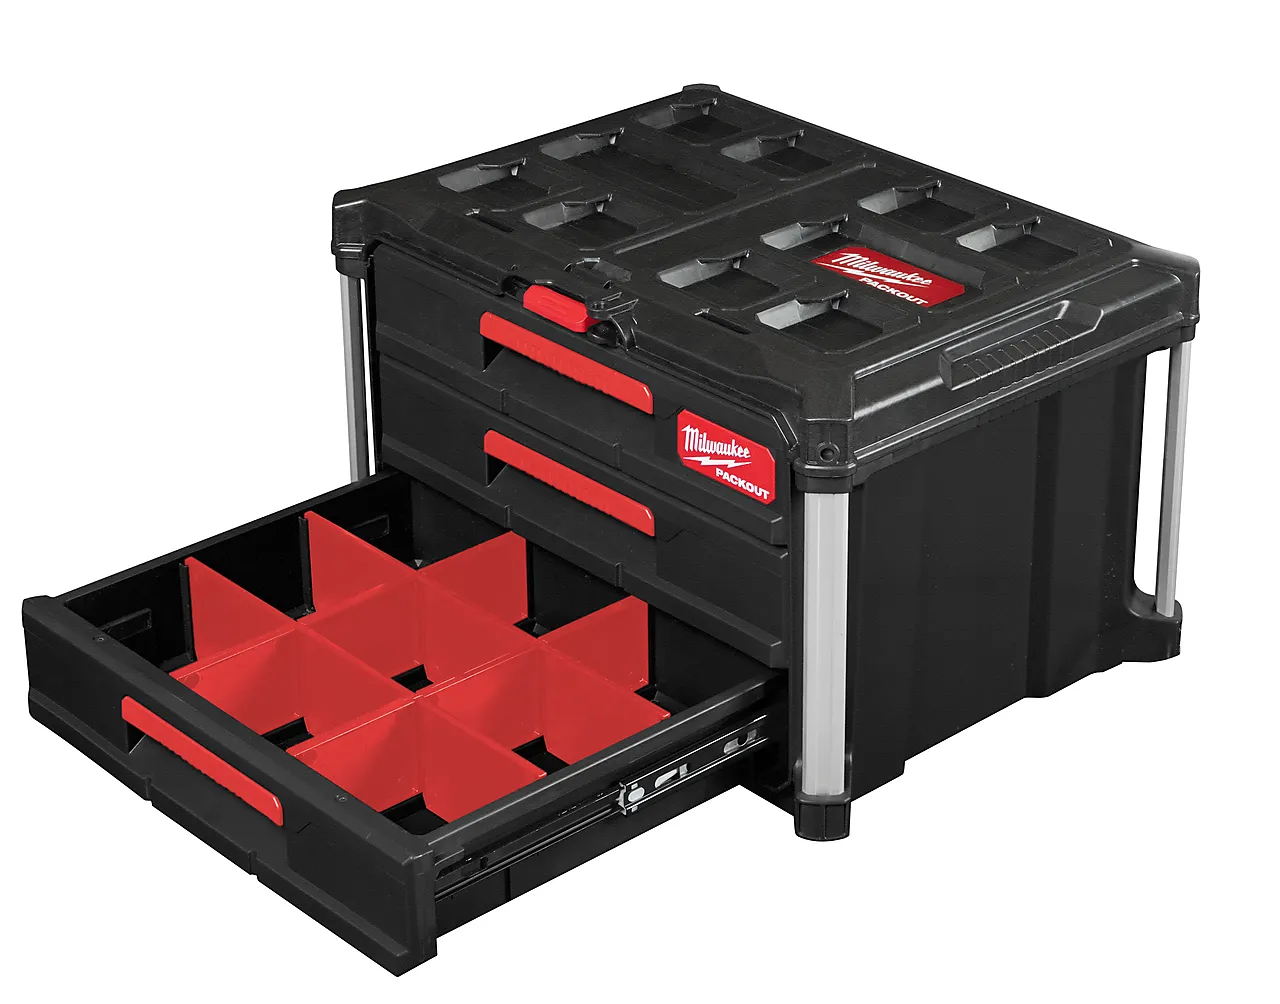 Koffert packout med 3 skuffer null - null - 2 - Miniatyr